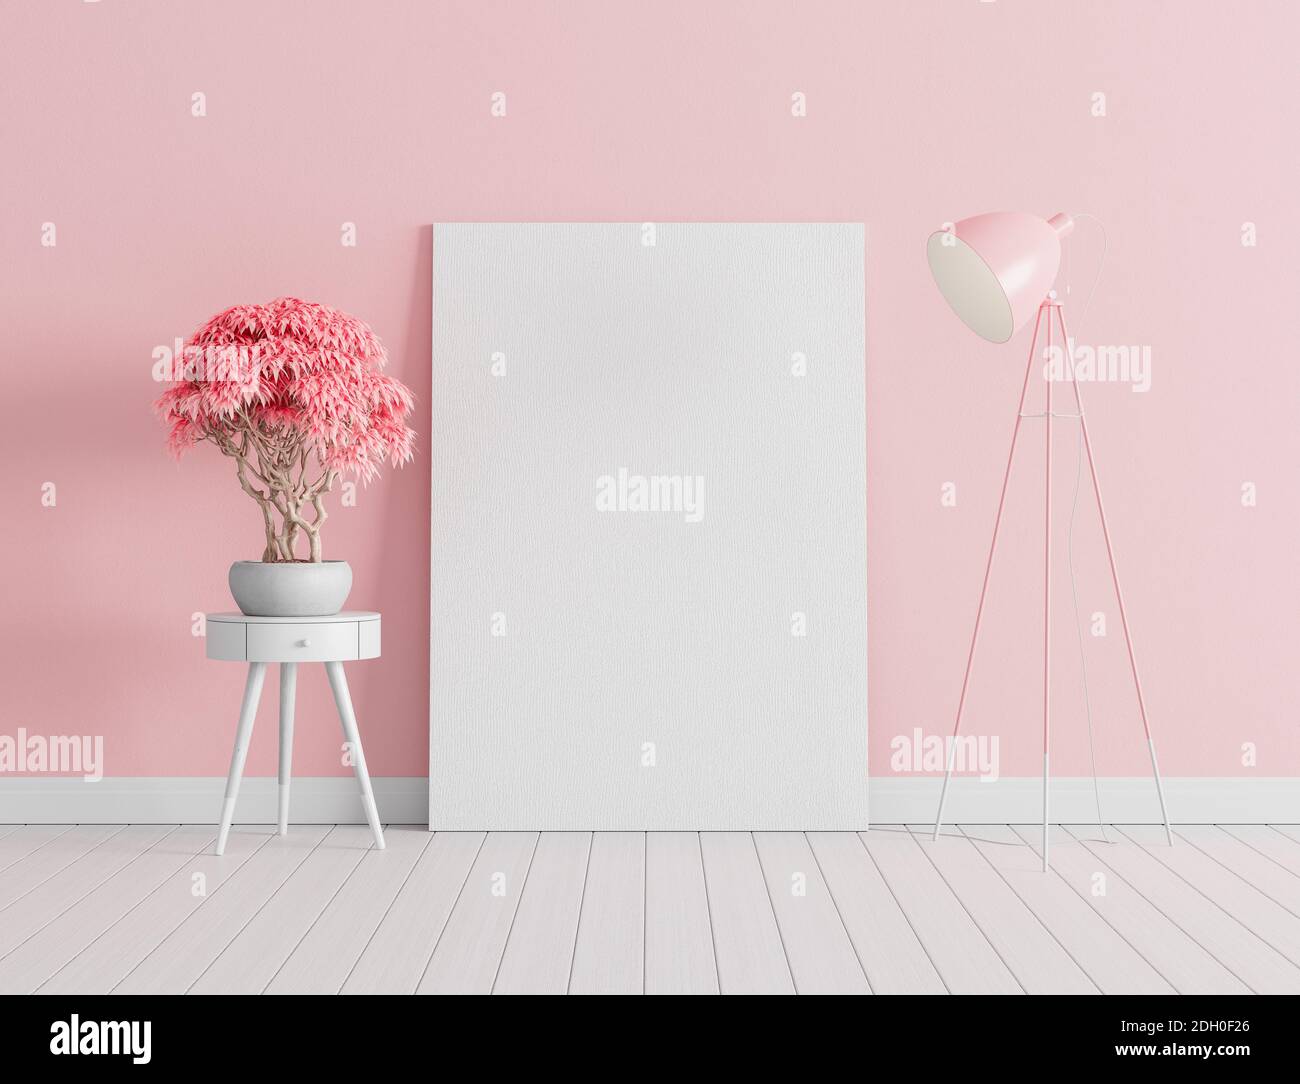 Poster in mock-up sulla parete di cemento rosa. Soggiorno moderno, design interno con lampada rosa e piante decorative 3d rendering illustrazione 3d Foto Stock